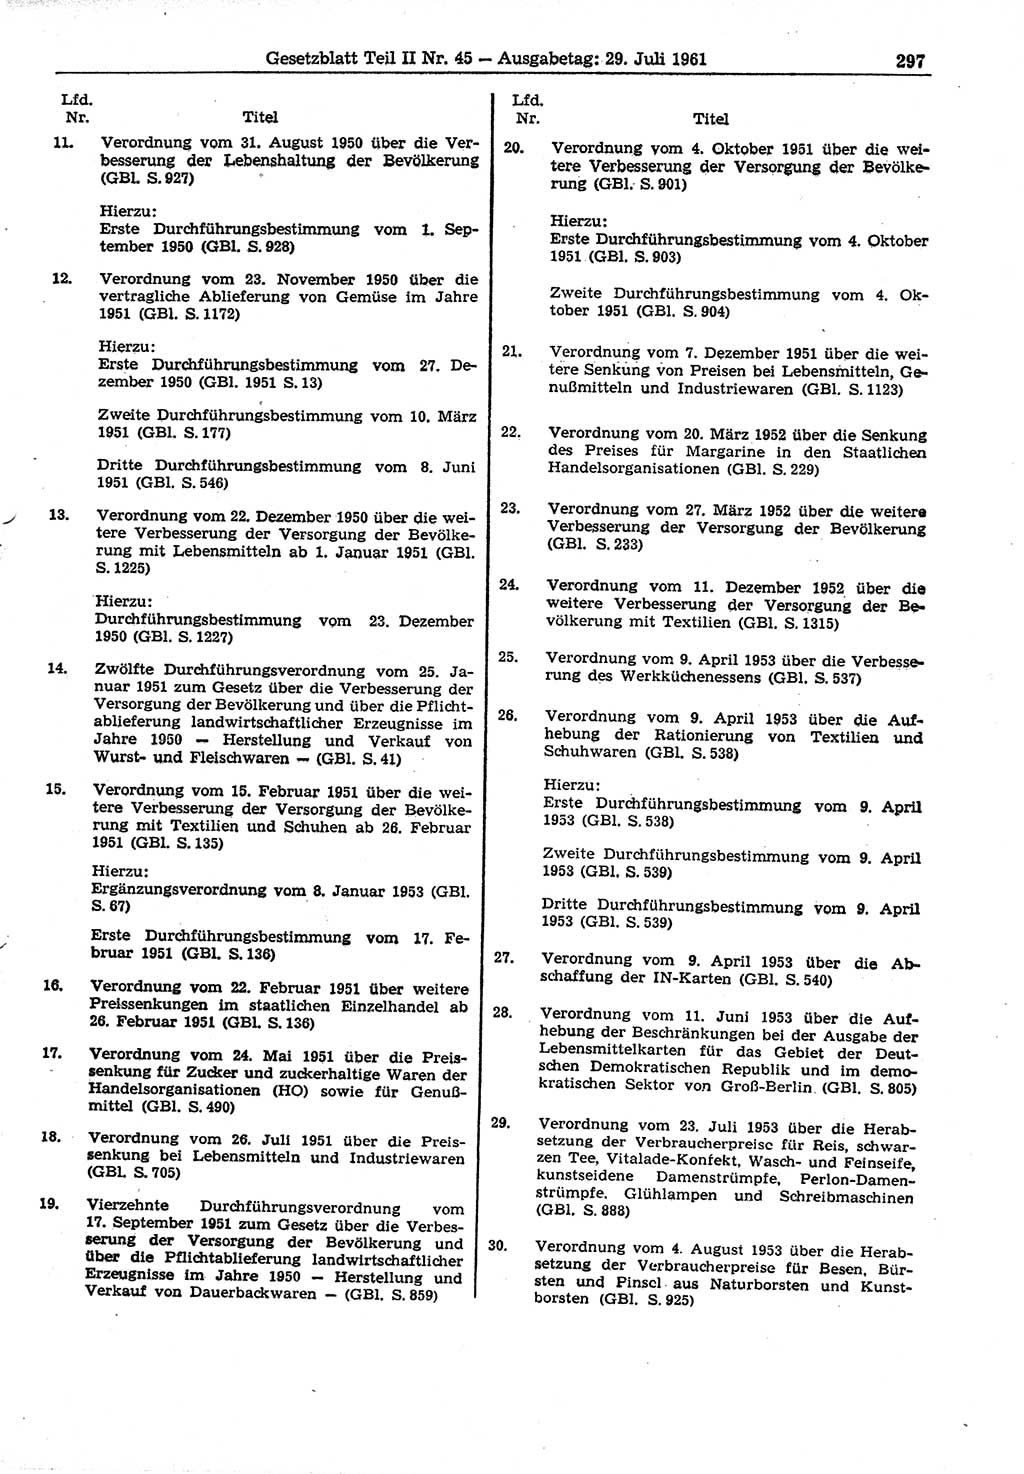 Gesetzblatt (GBl.) der Deutschen Demokratischen Republik (DDR) Teil ⅠⅠ 1961, Seite 297 (GBl. DDR ⅠⅠ 1961, S. 297)